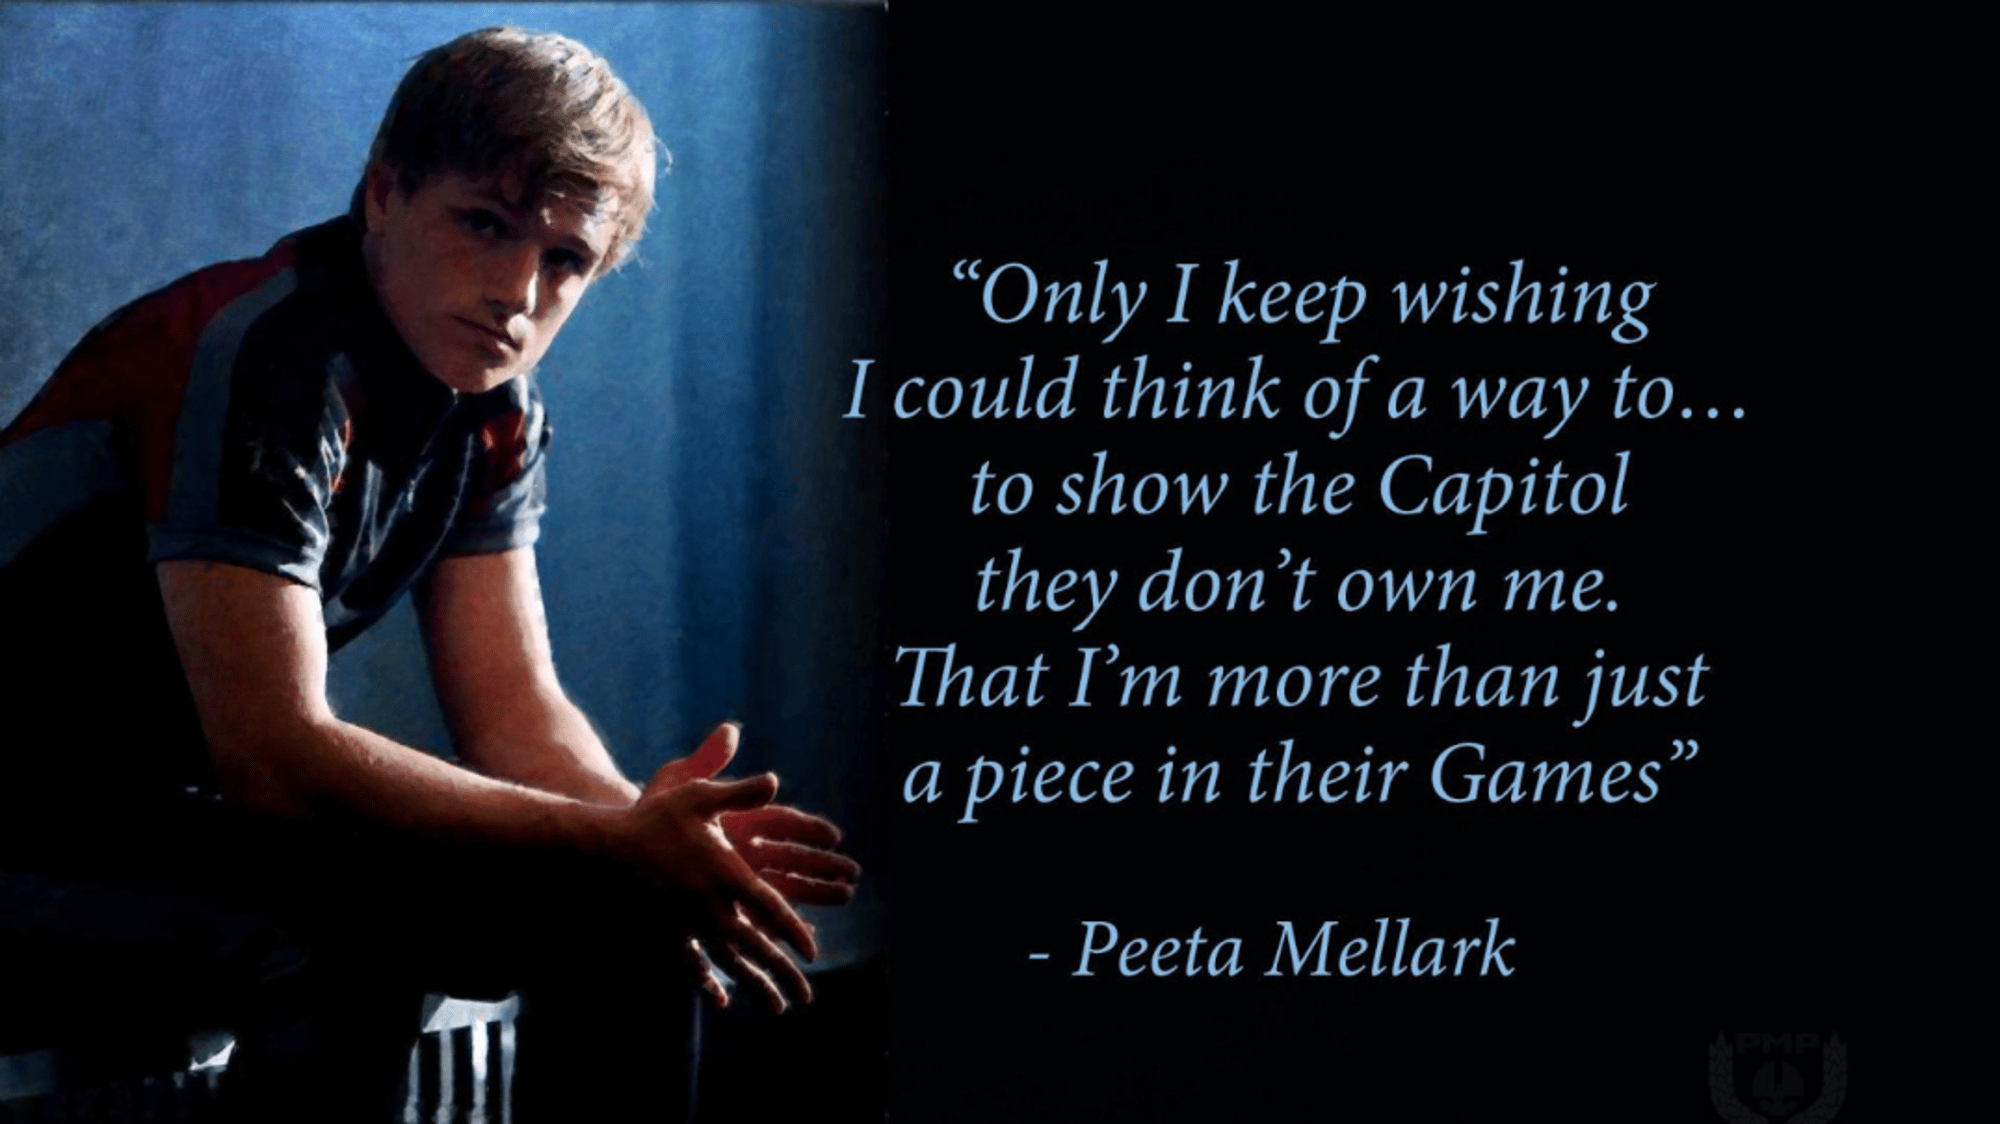 Peeta Mellark